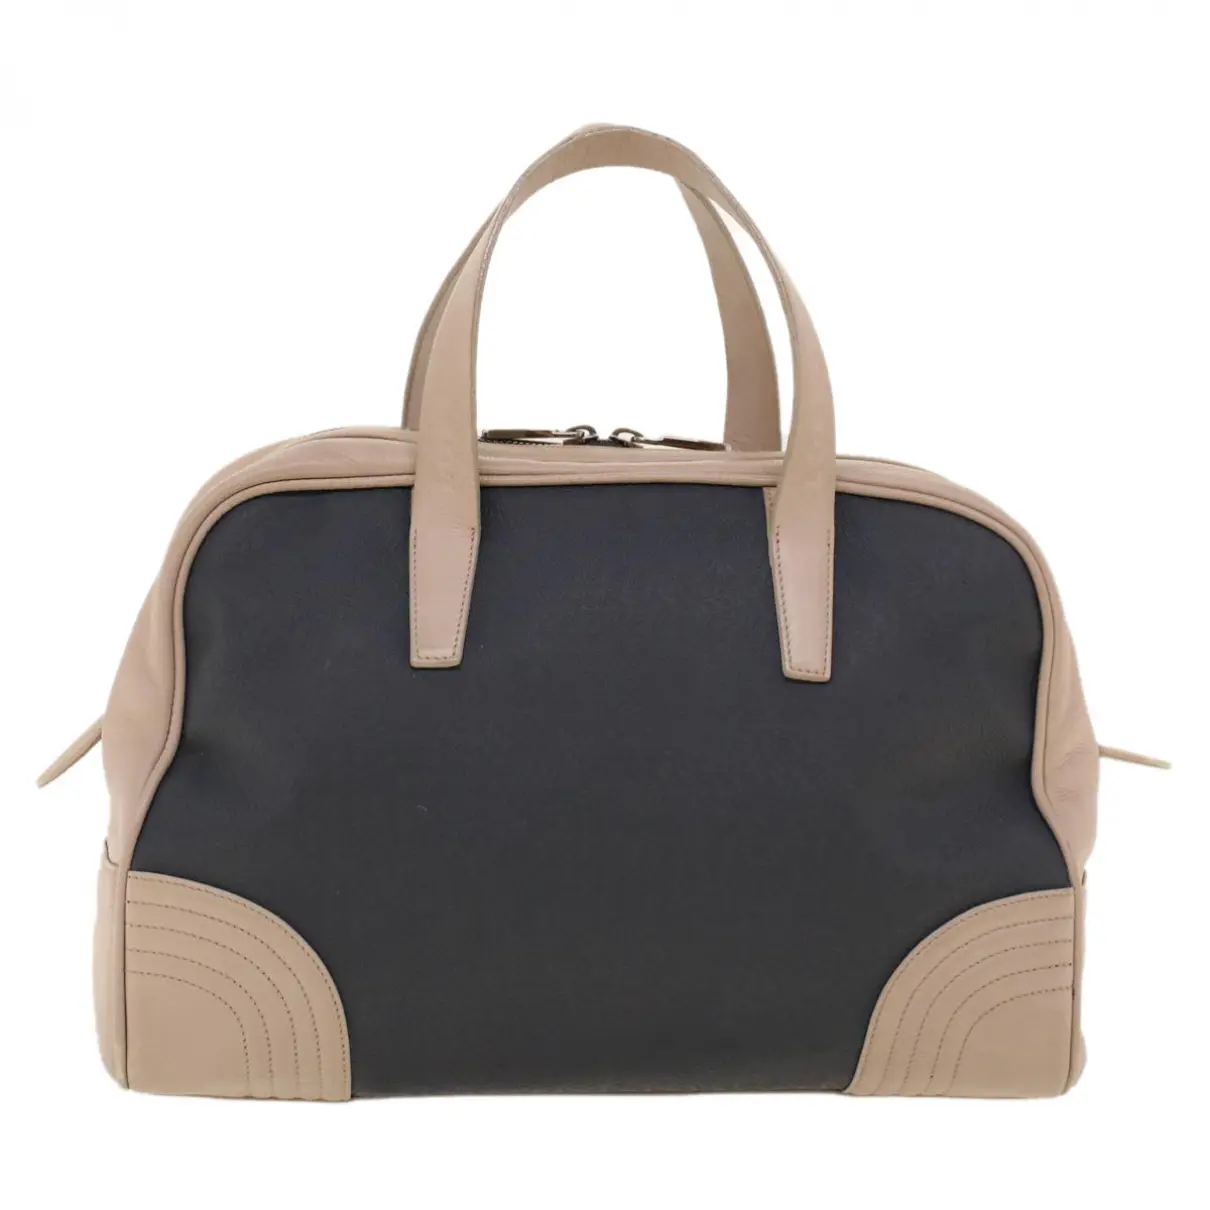 Anagram leather handbag Loewe